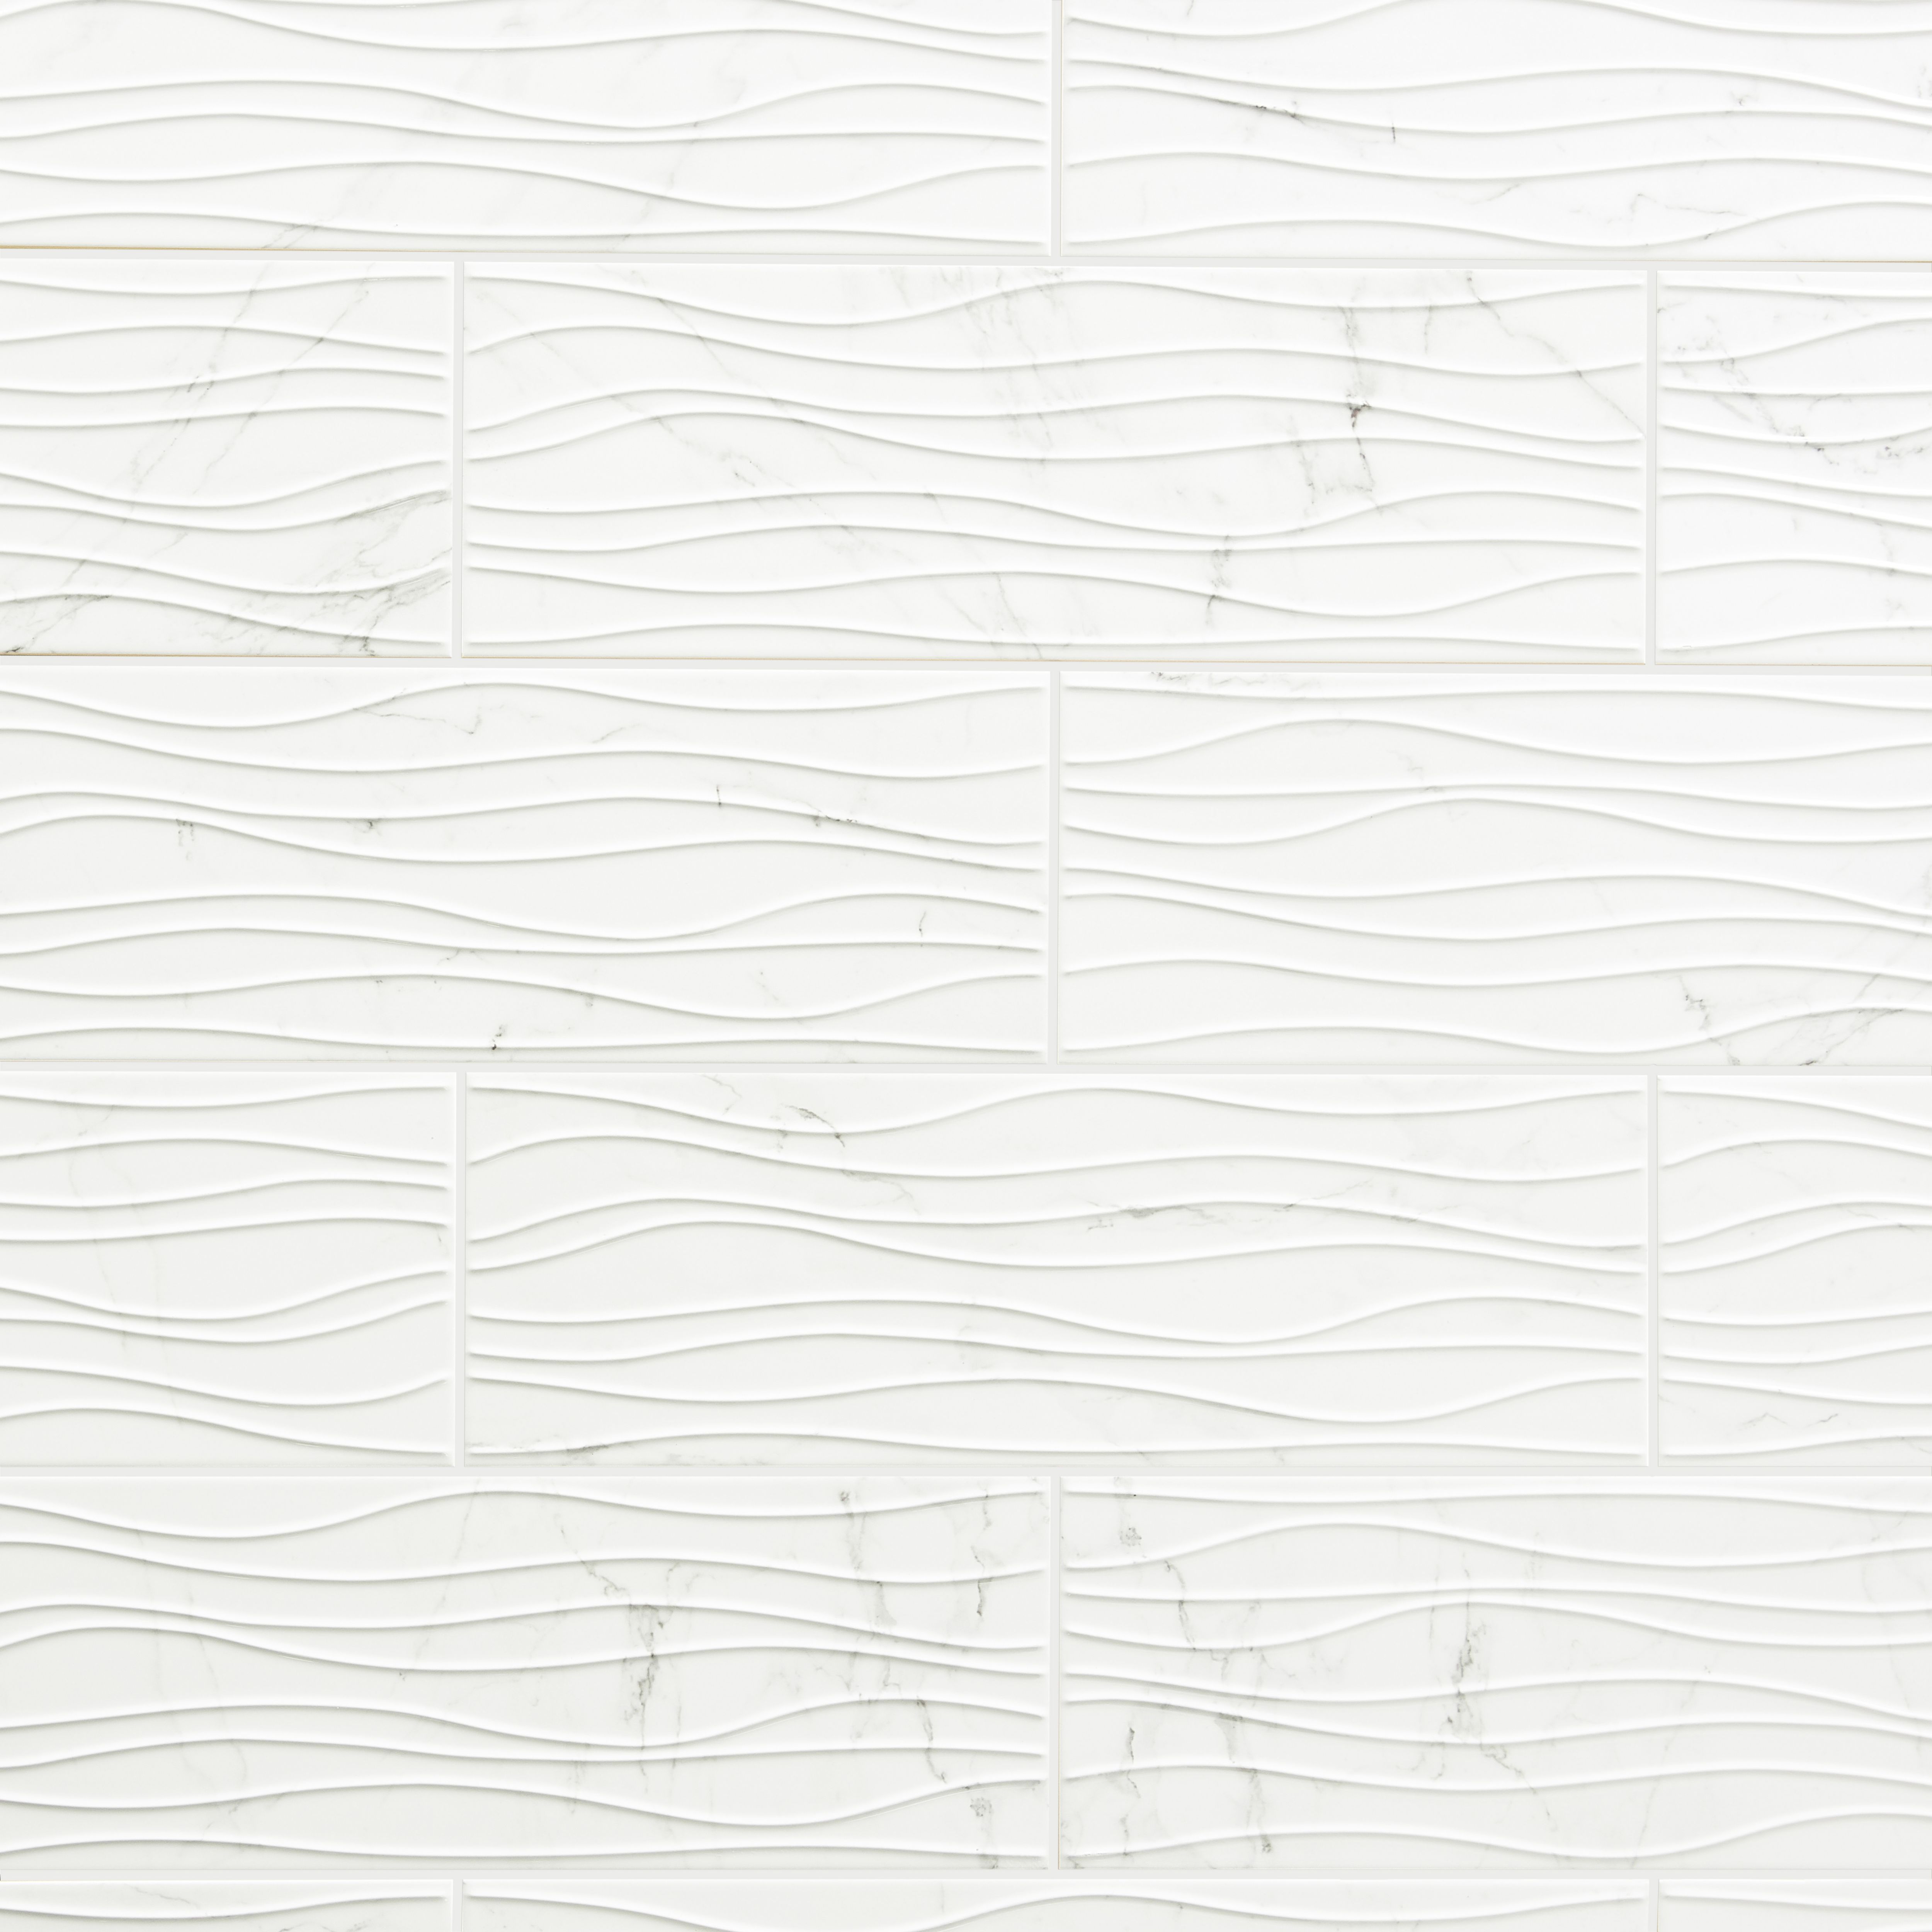 Elegance White 3D decor Marble effect Ceramic Indoor Tile, Pack of 7, (L)600mm (W)200mm